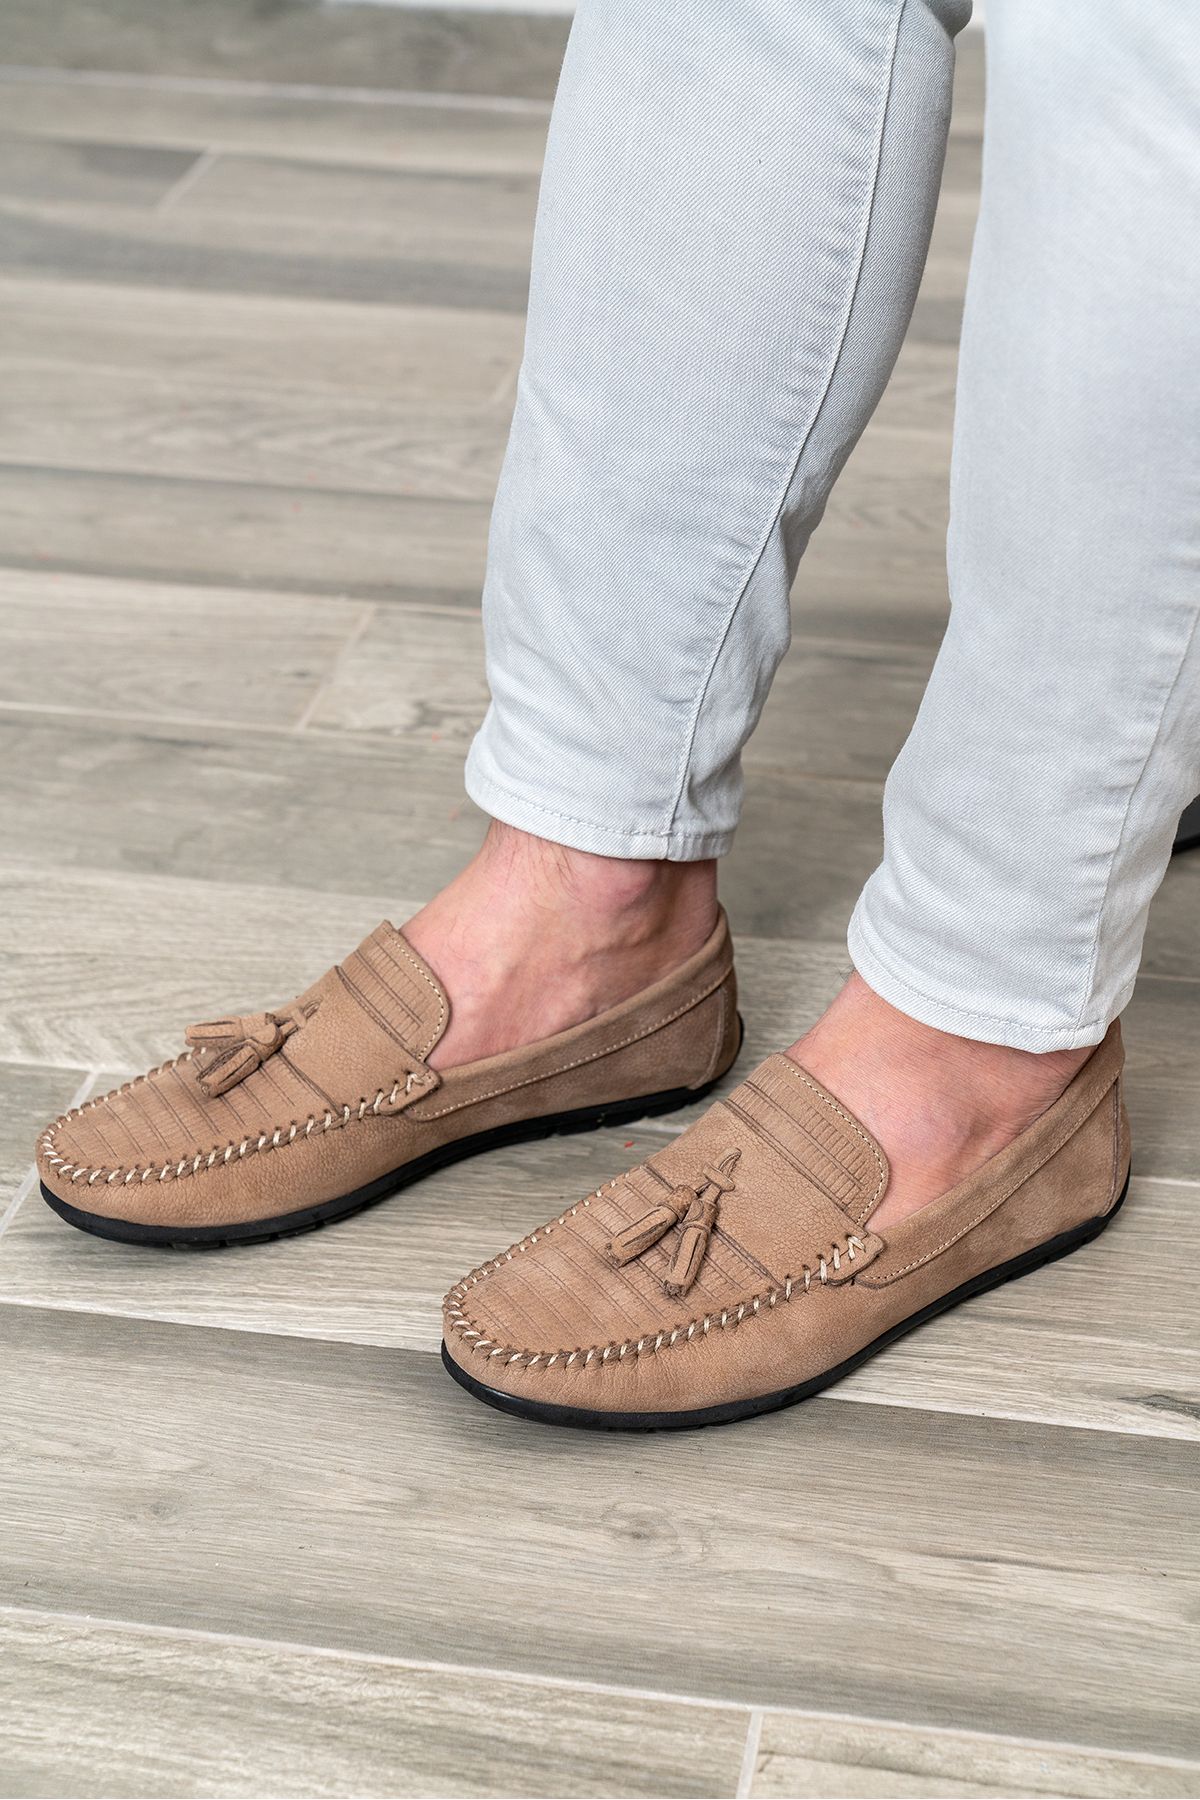 D&M DANİ&MARCA Hakiki Deri Erkek Günlük Ayakkabı, Loafer Ayakkabı, yazlık erkek ayakkabı